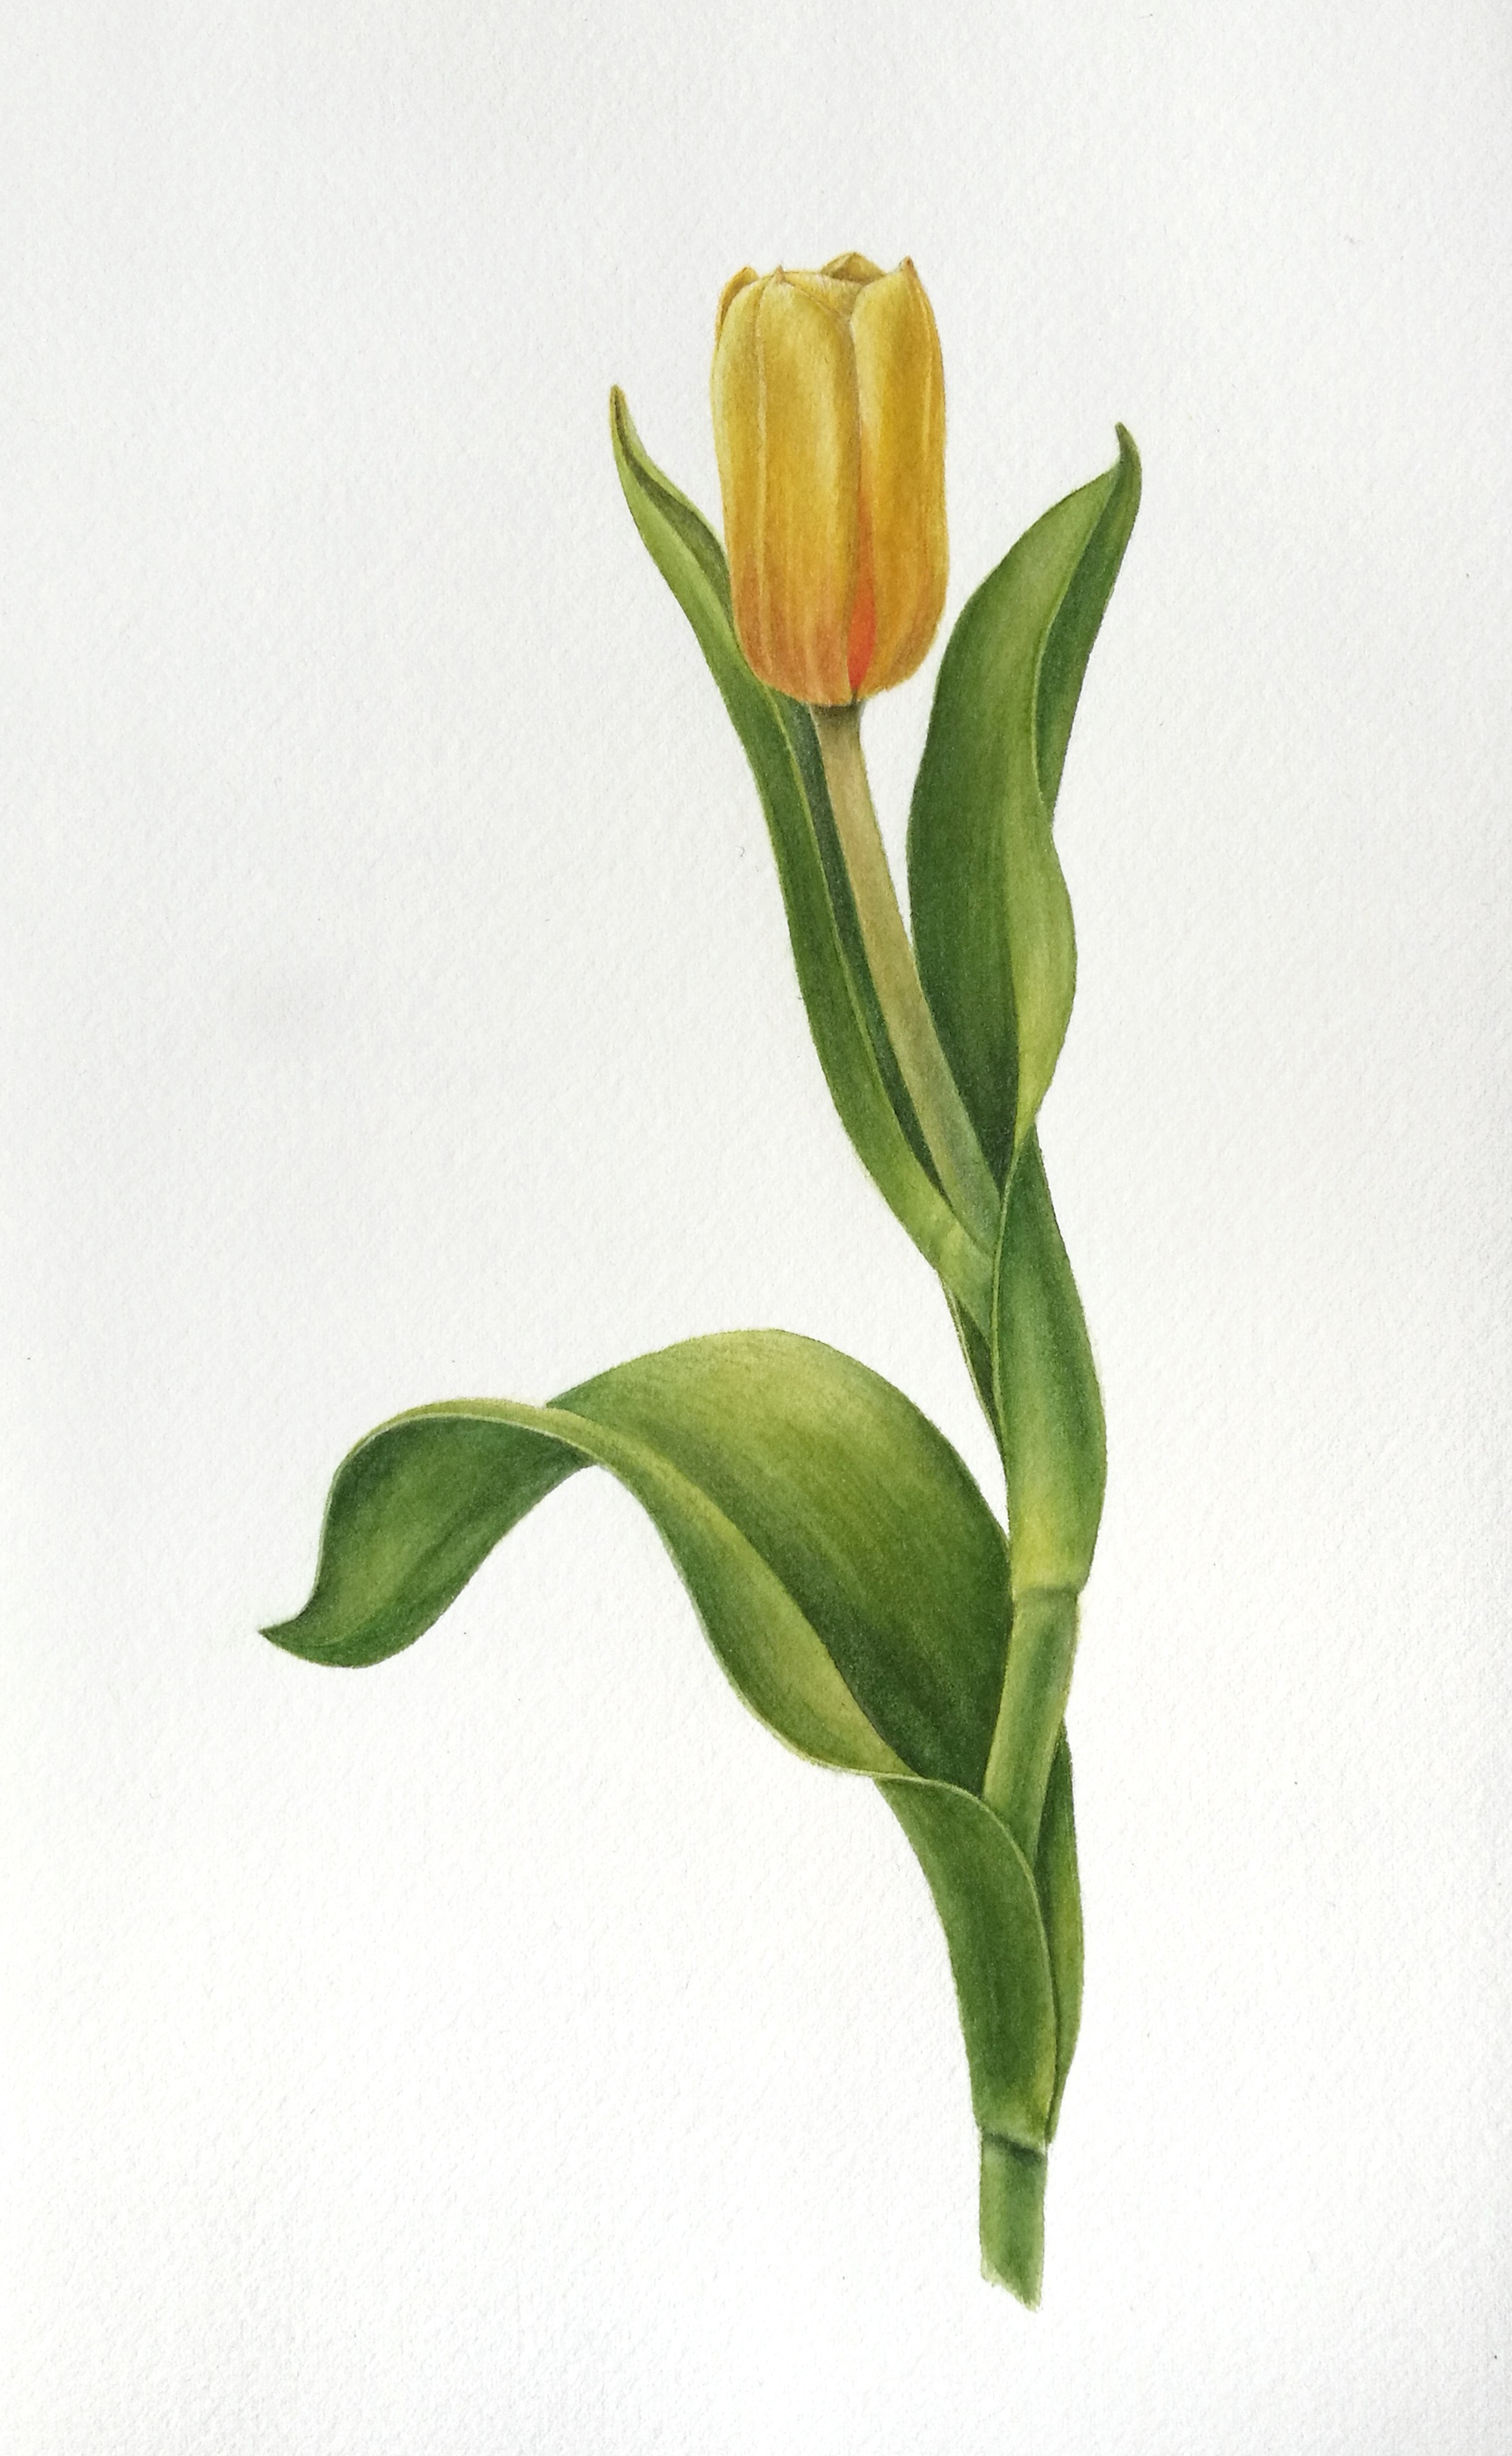 Тюльпан жёлтый (Tulipa gesneriana yellow)